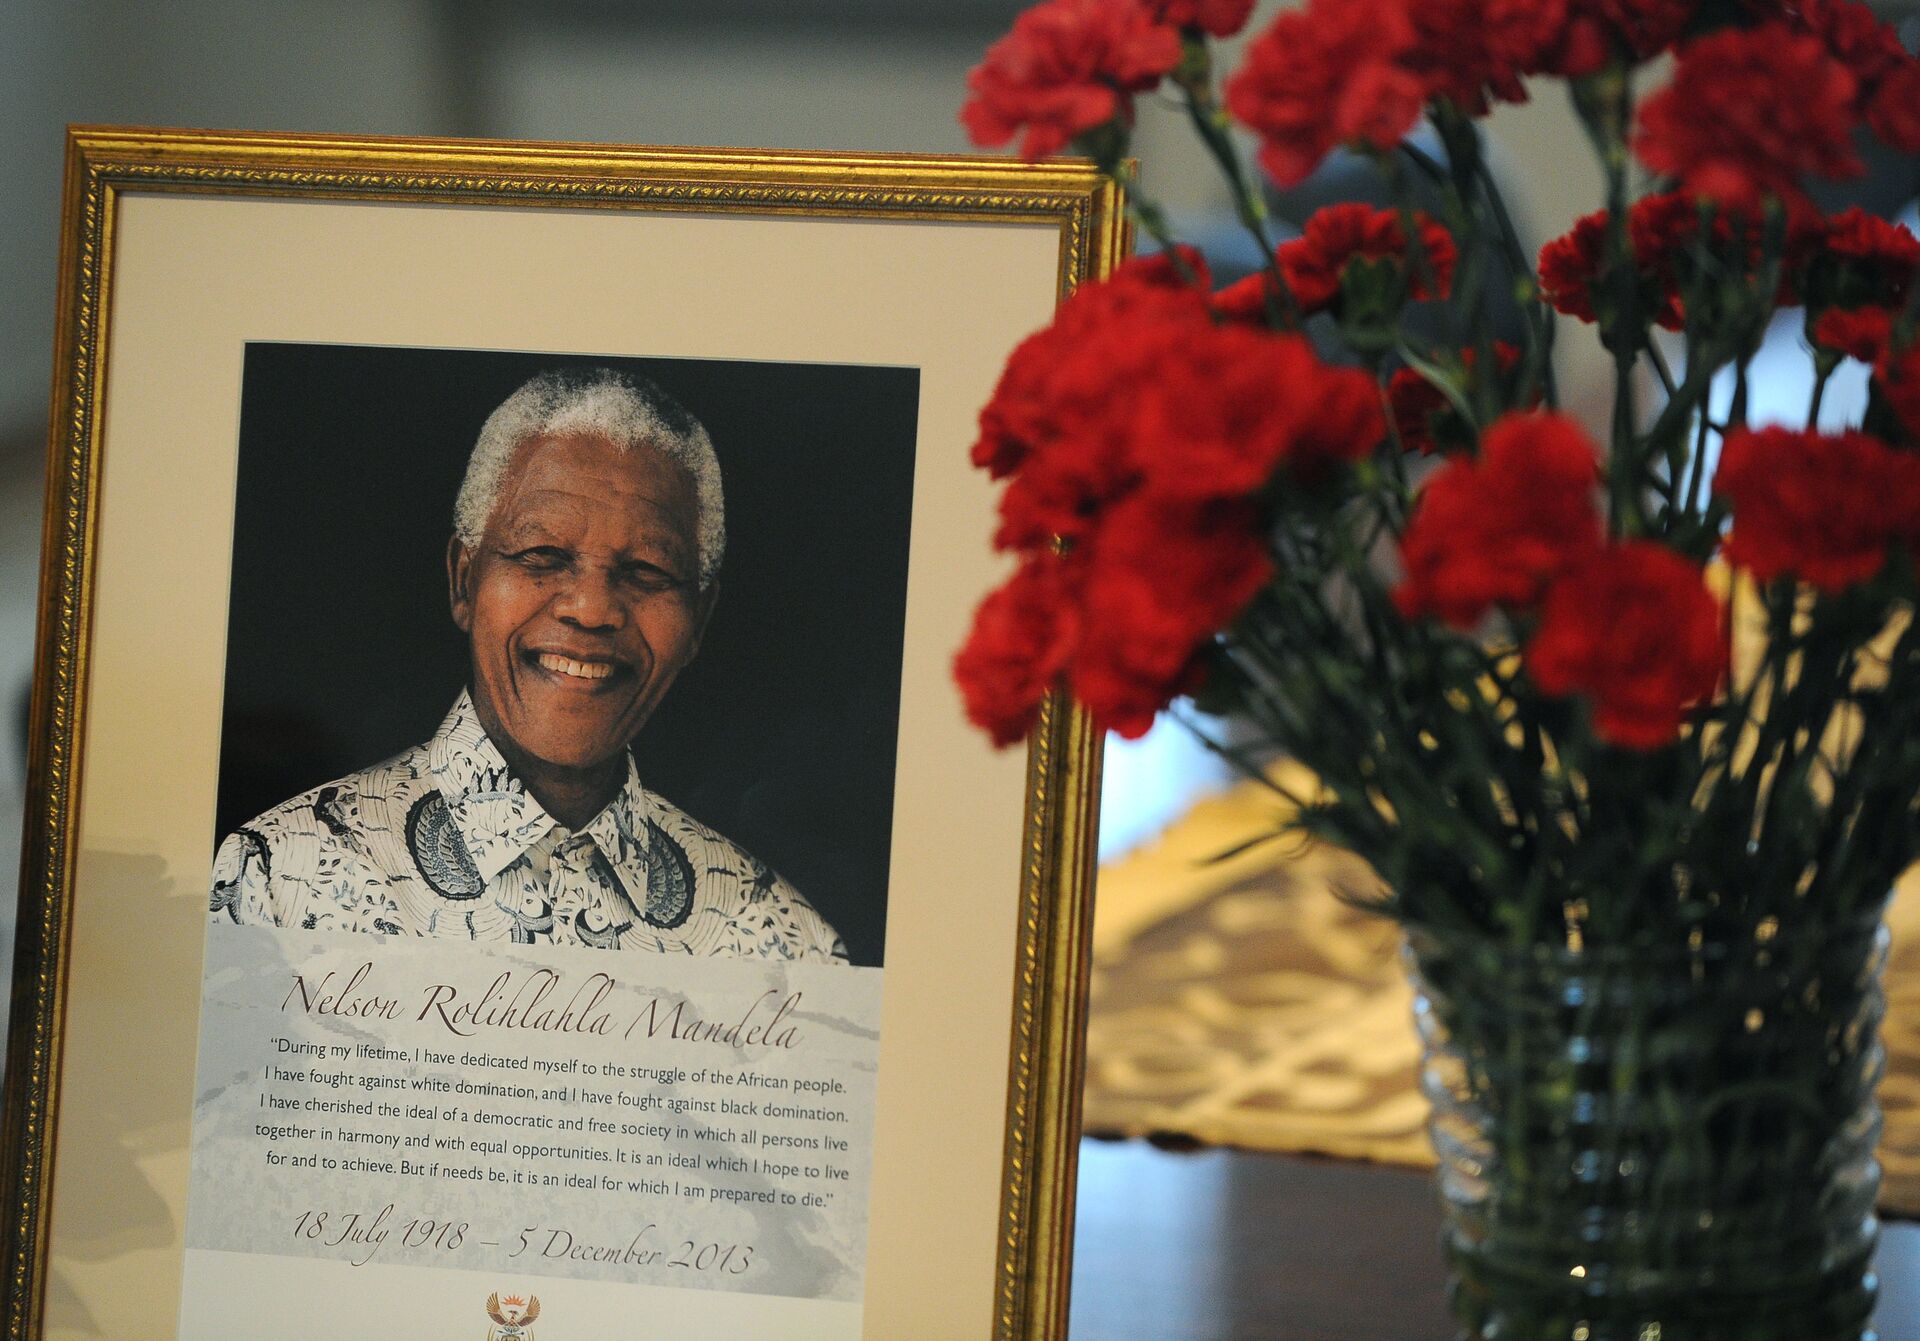 В посольстве ЮАР в Москве открыта книга памяти Нельсона Манделы - РИА Новости, 1920, 18.07.2018